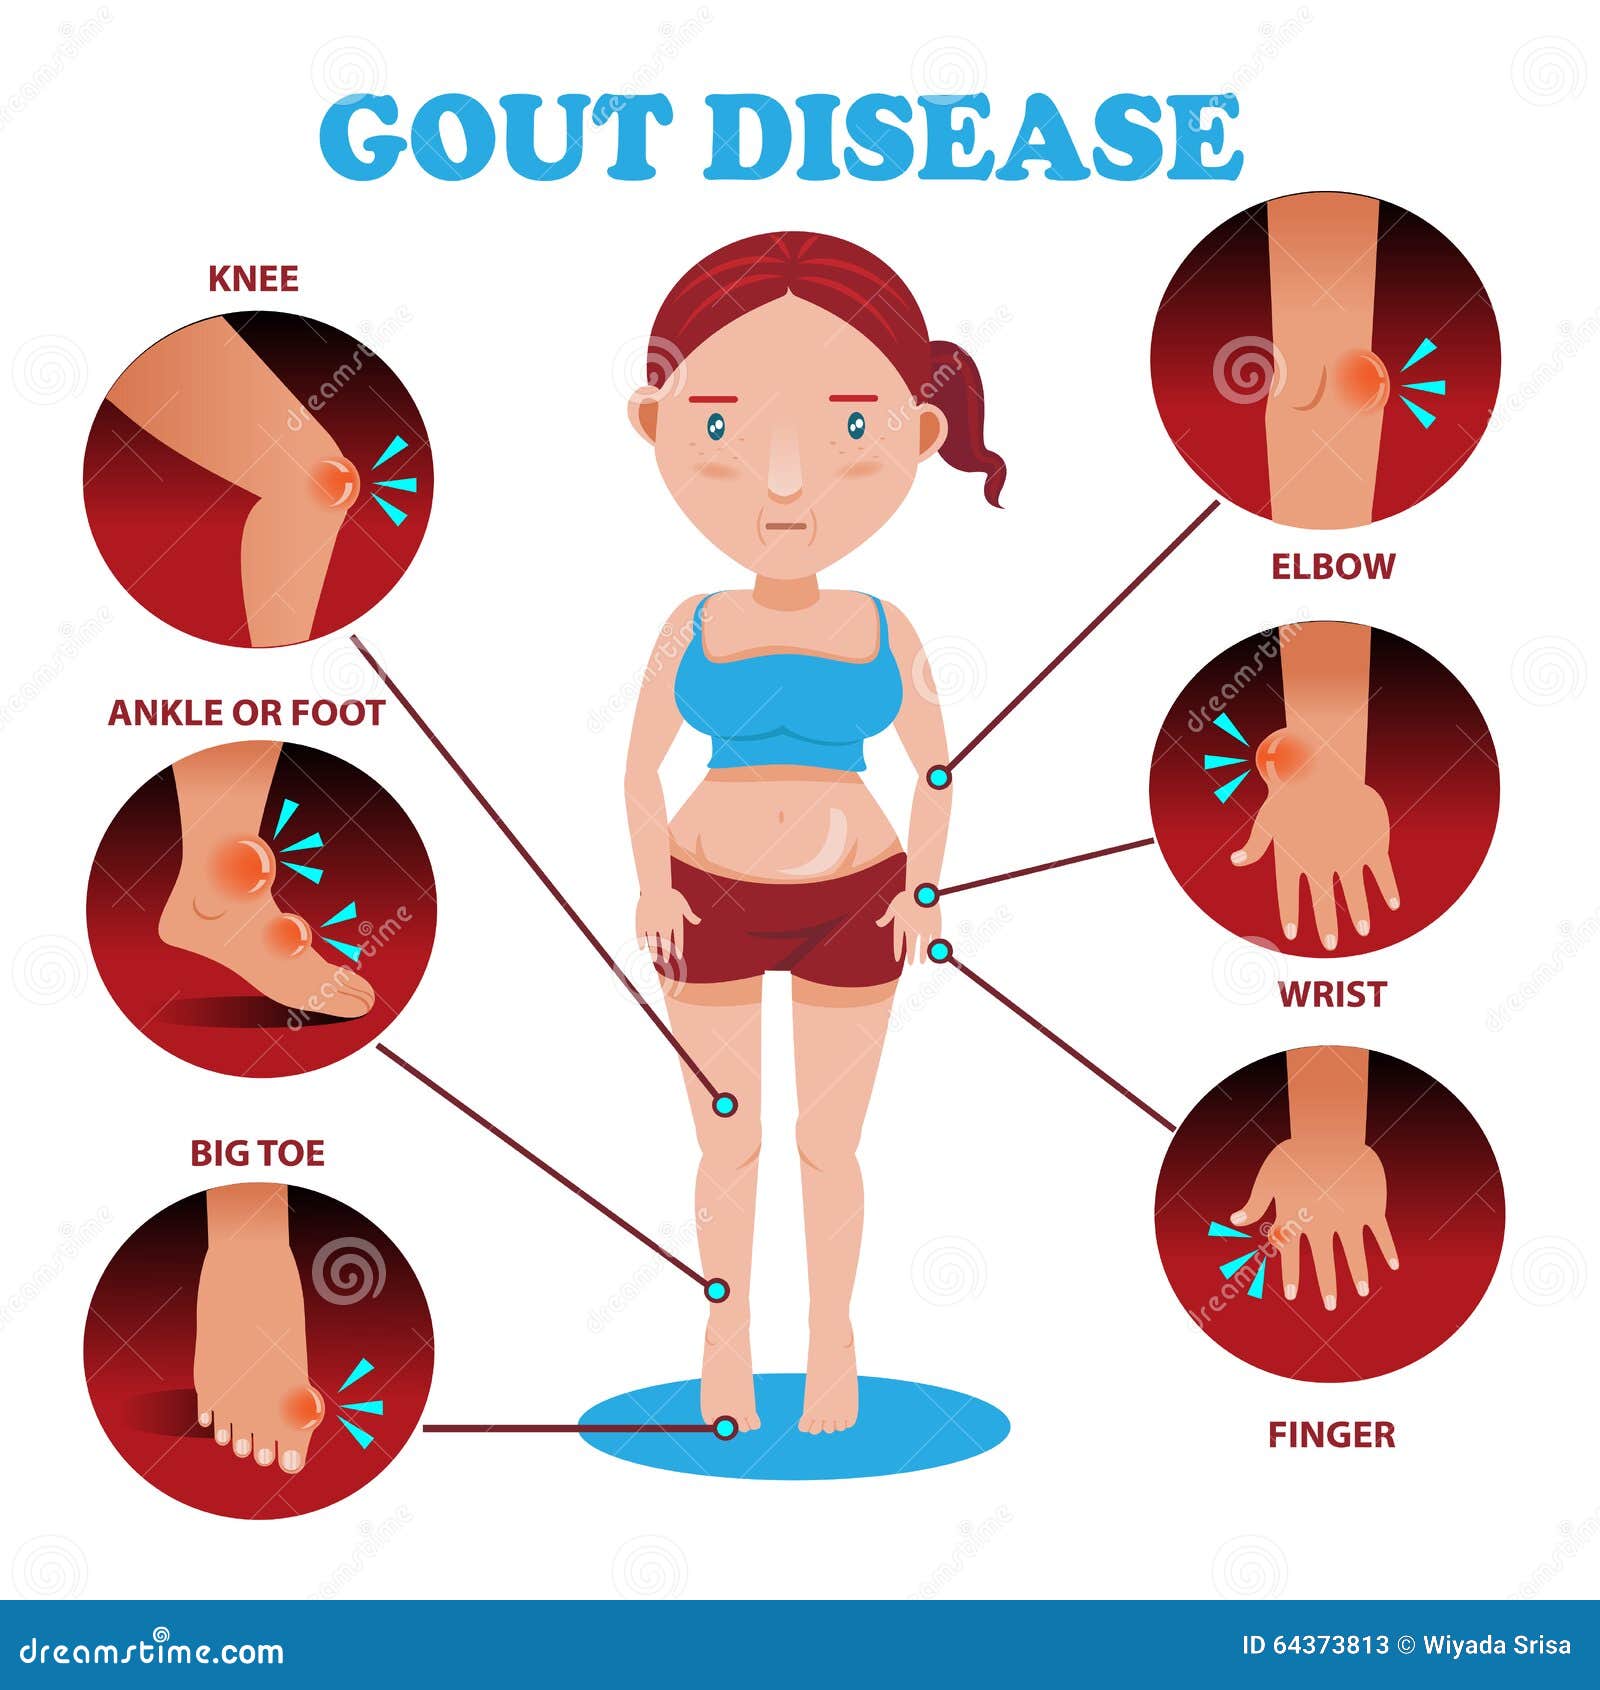 gout symptoms